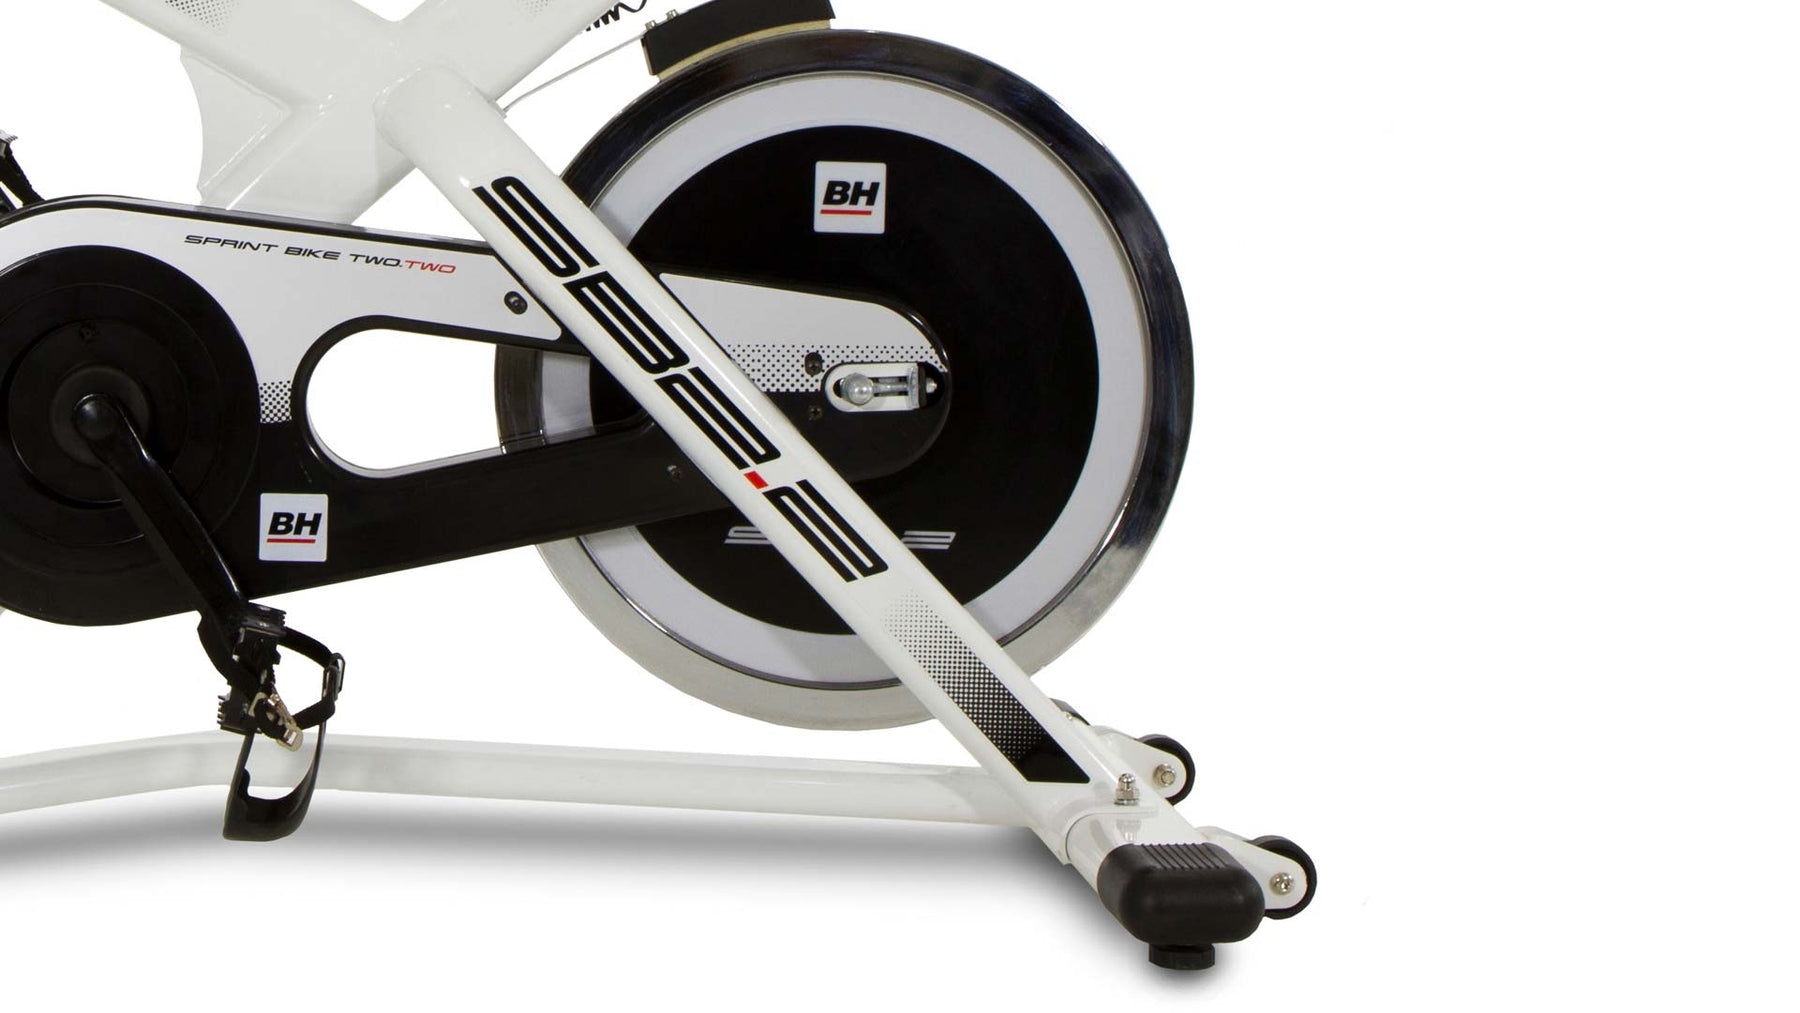 Comprá Bicicleta Indoor Athletic Spinning 550BS - Envios a todo el